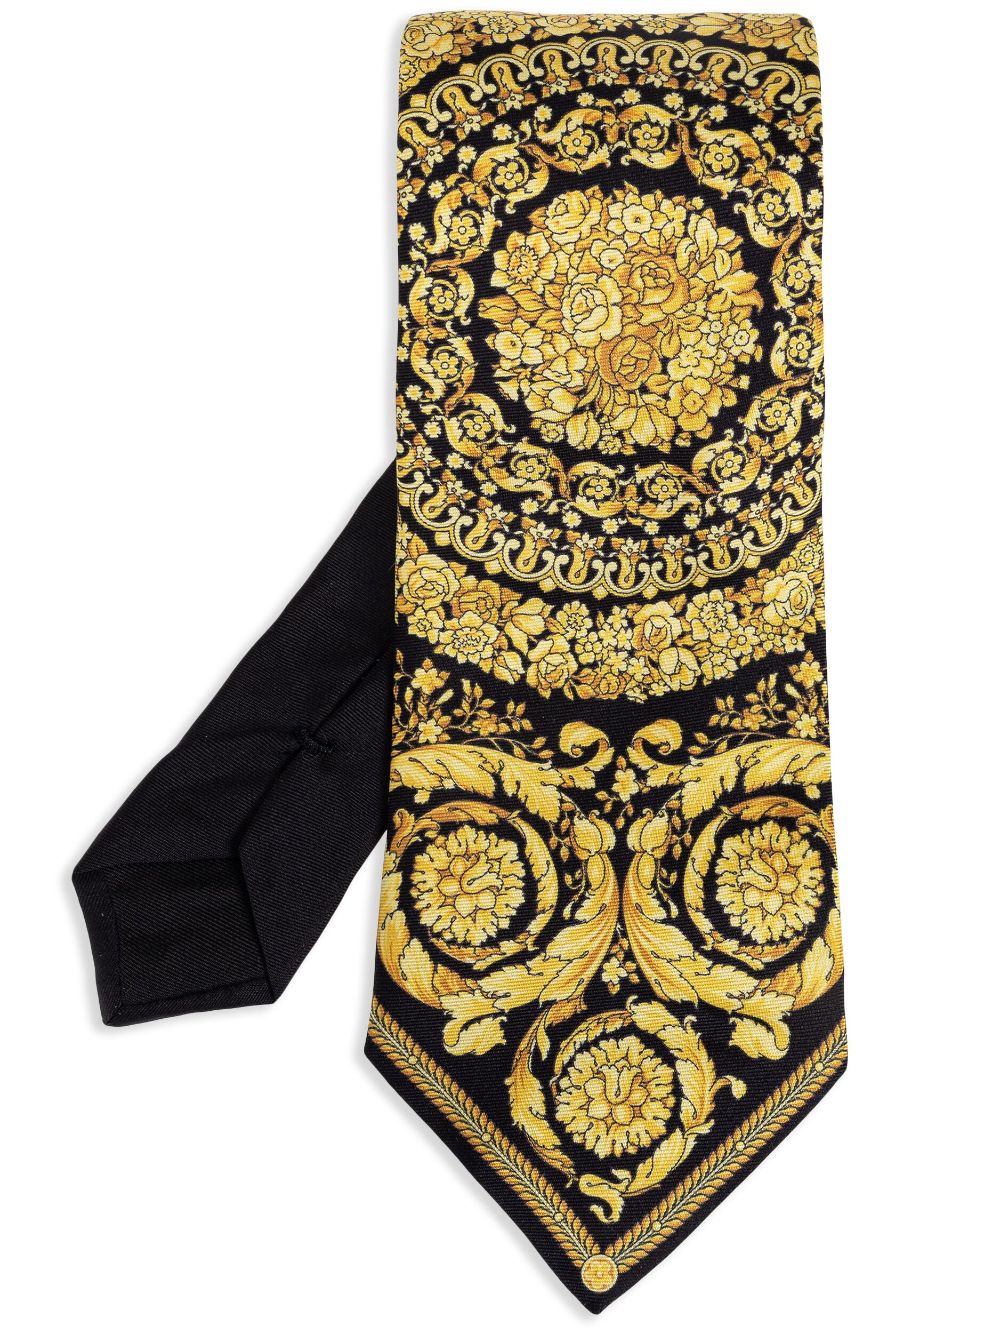 Barocco silk tie